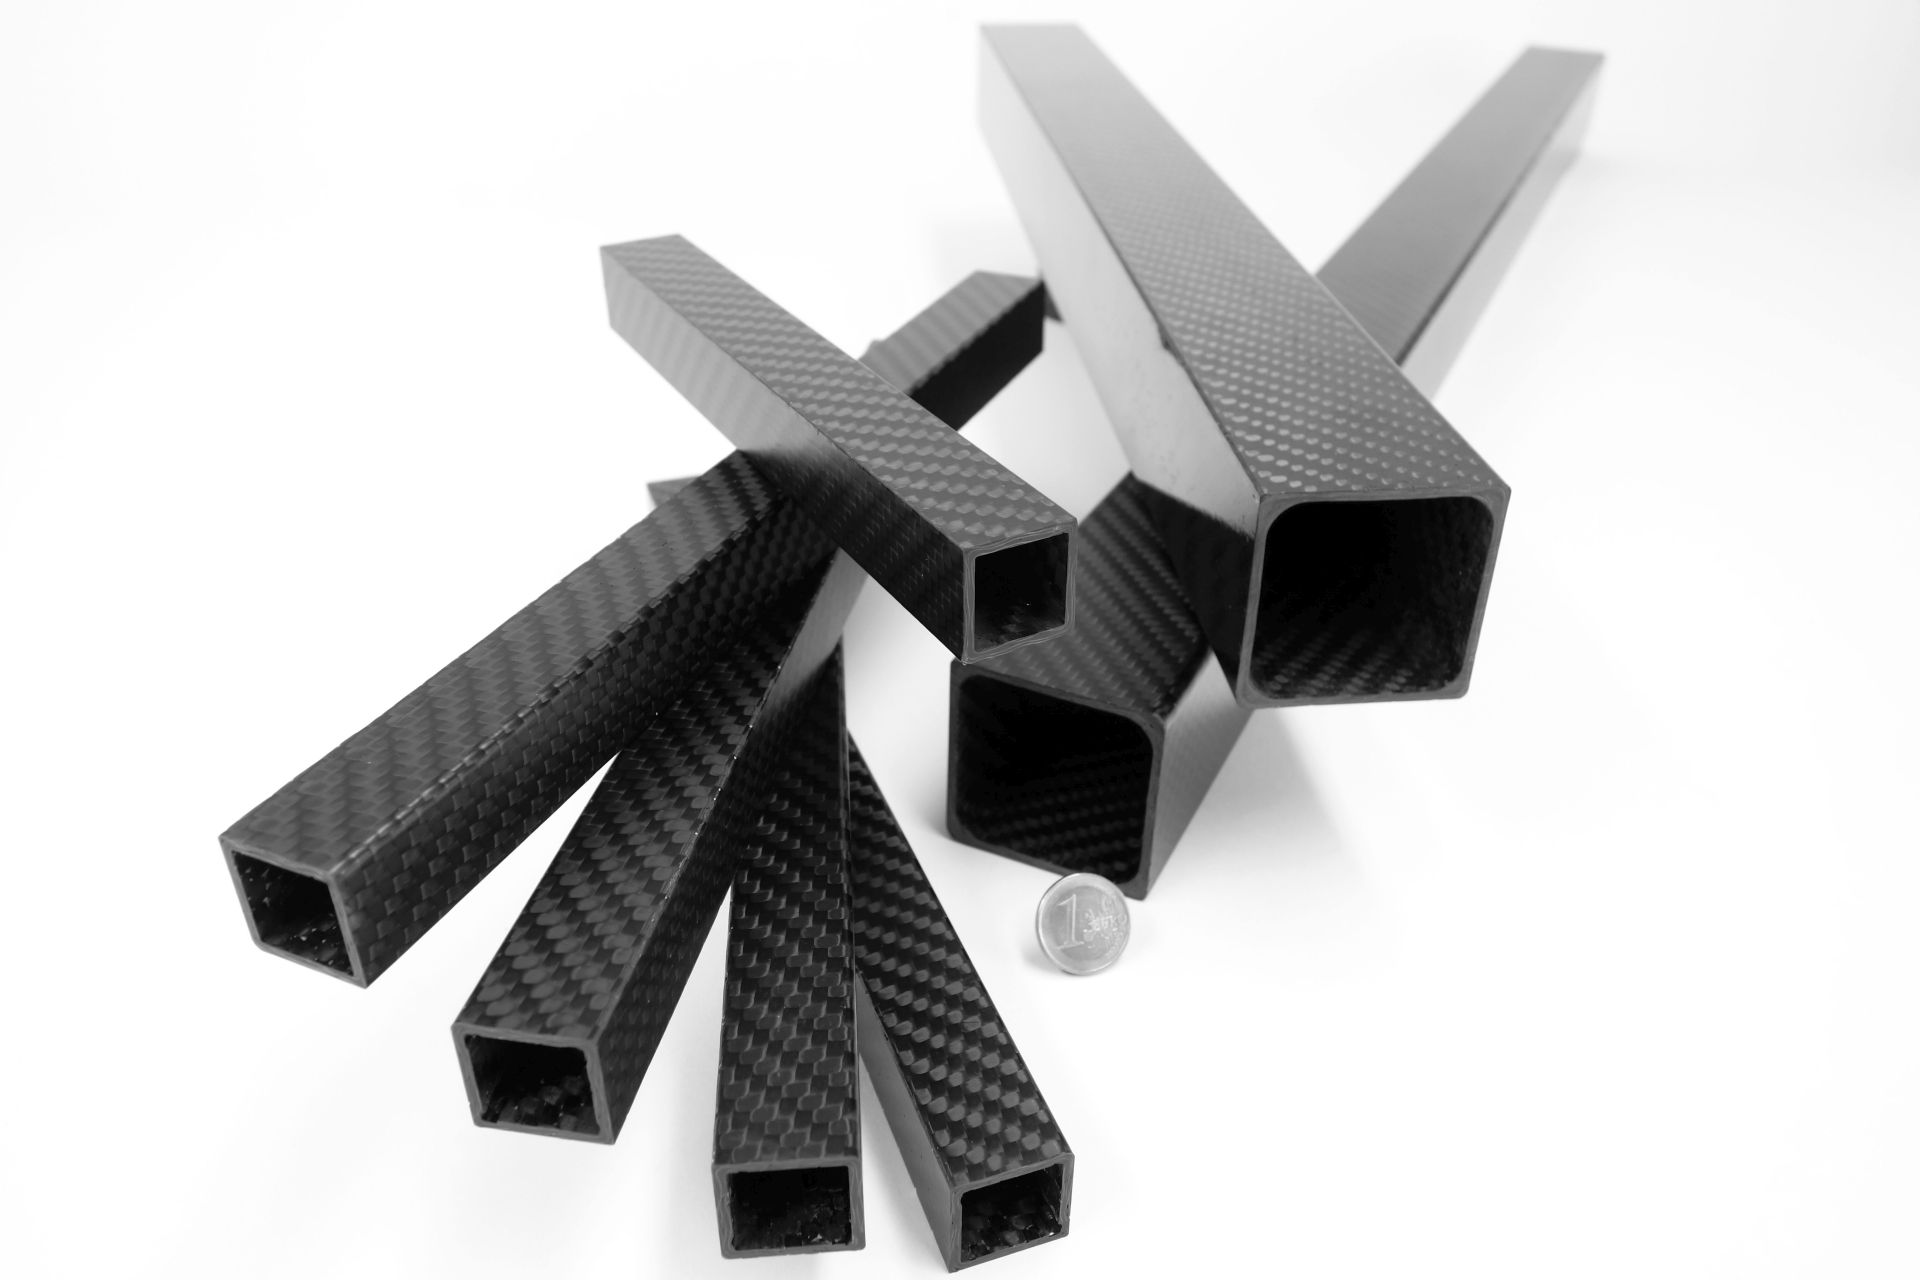 Carbon Composite - All carbon square tubes